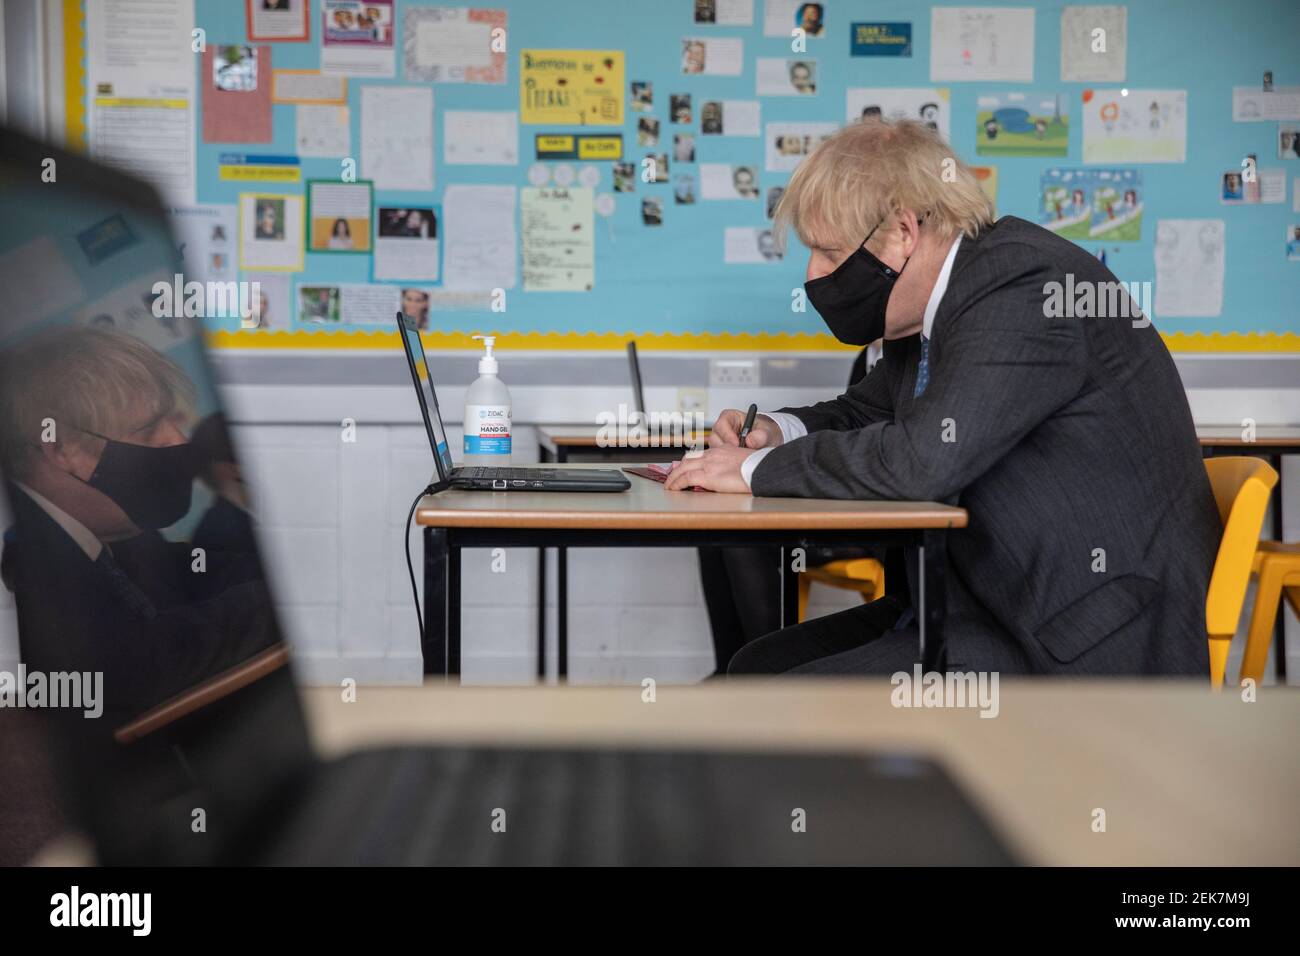 Il primo Ministro Boris Johnson partecipa a una lezione online durante una visita alla Sedgehill School di Lewisham, a sud-est di Londra, per vedere i preparativi per gli studenti che tornano a scuola. Data immagine: Martedì 23 febbraio 2021. Foto Stock